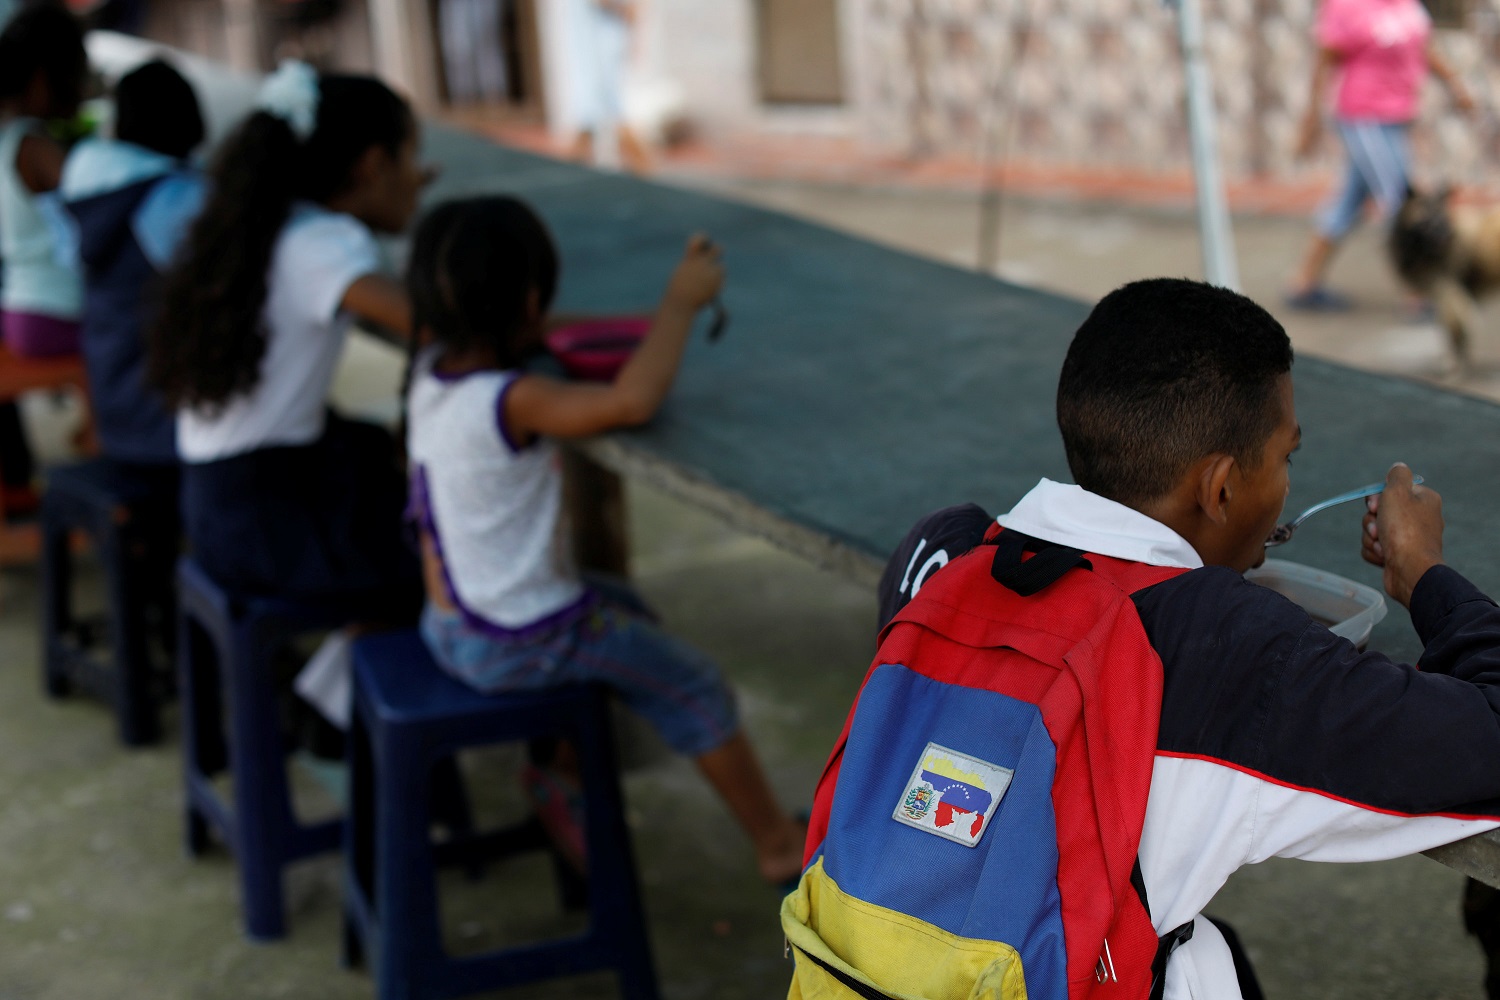 Los niños almuerzan en un comedor dirigido por opositores en el barrio de La Vega en Caracas, Venezuela el 23 de mayo de 2017. Foto tomada el 23 de mayo de 2017. REUTERS / Carlos Garcia Rawlins